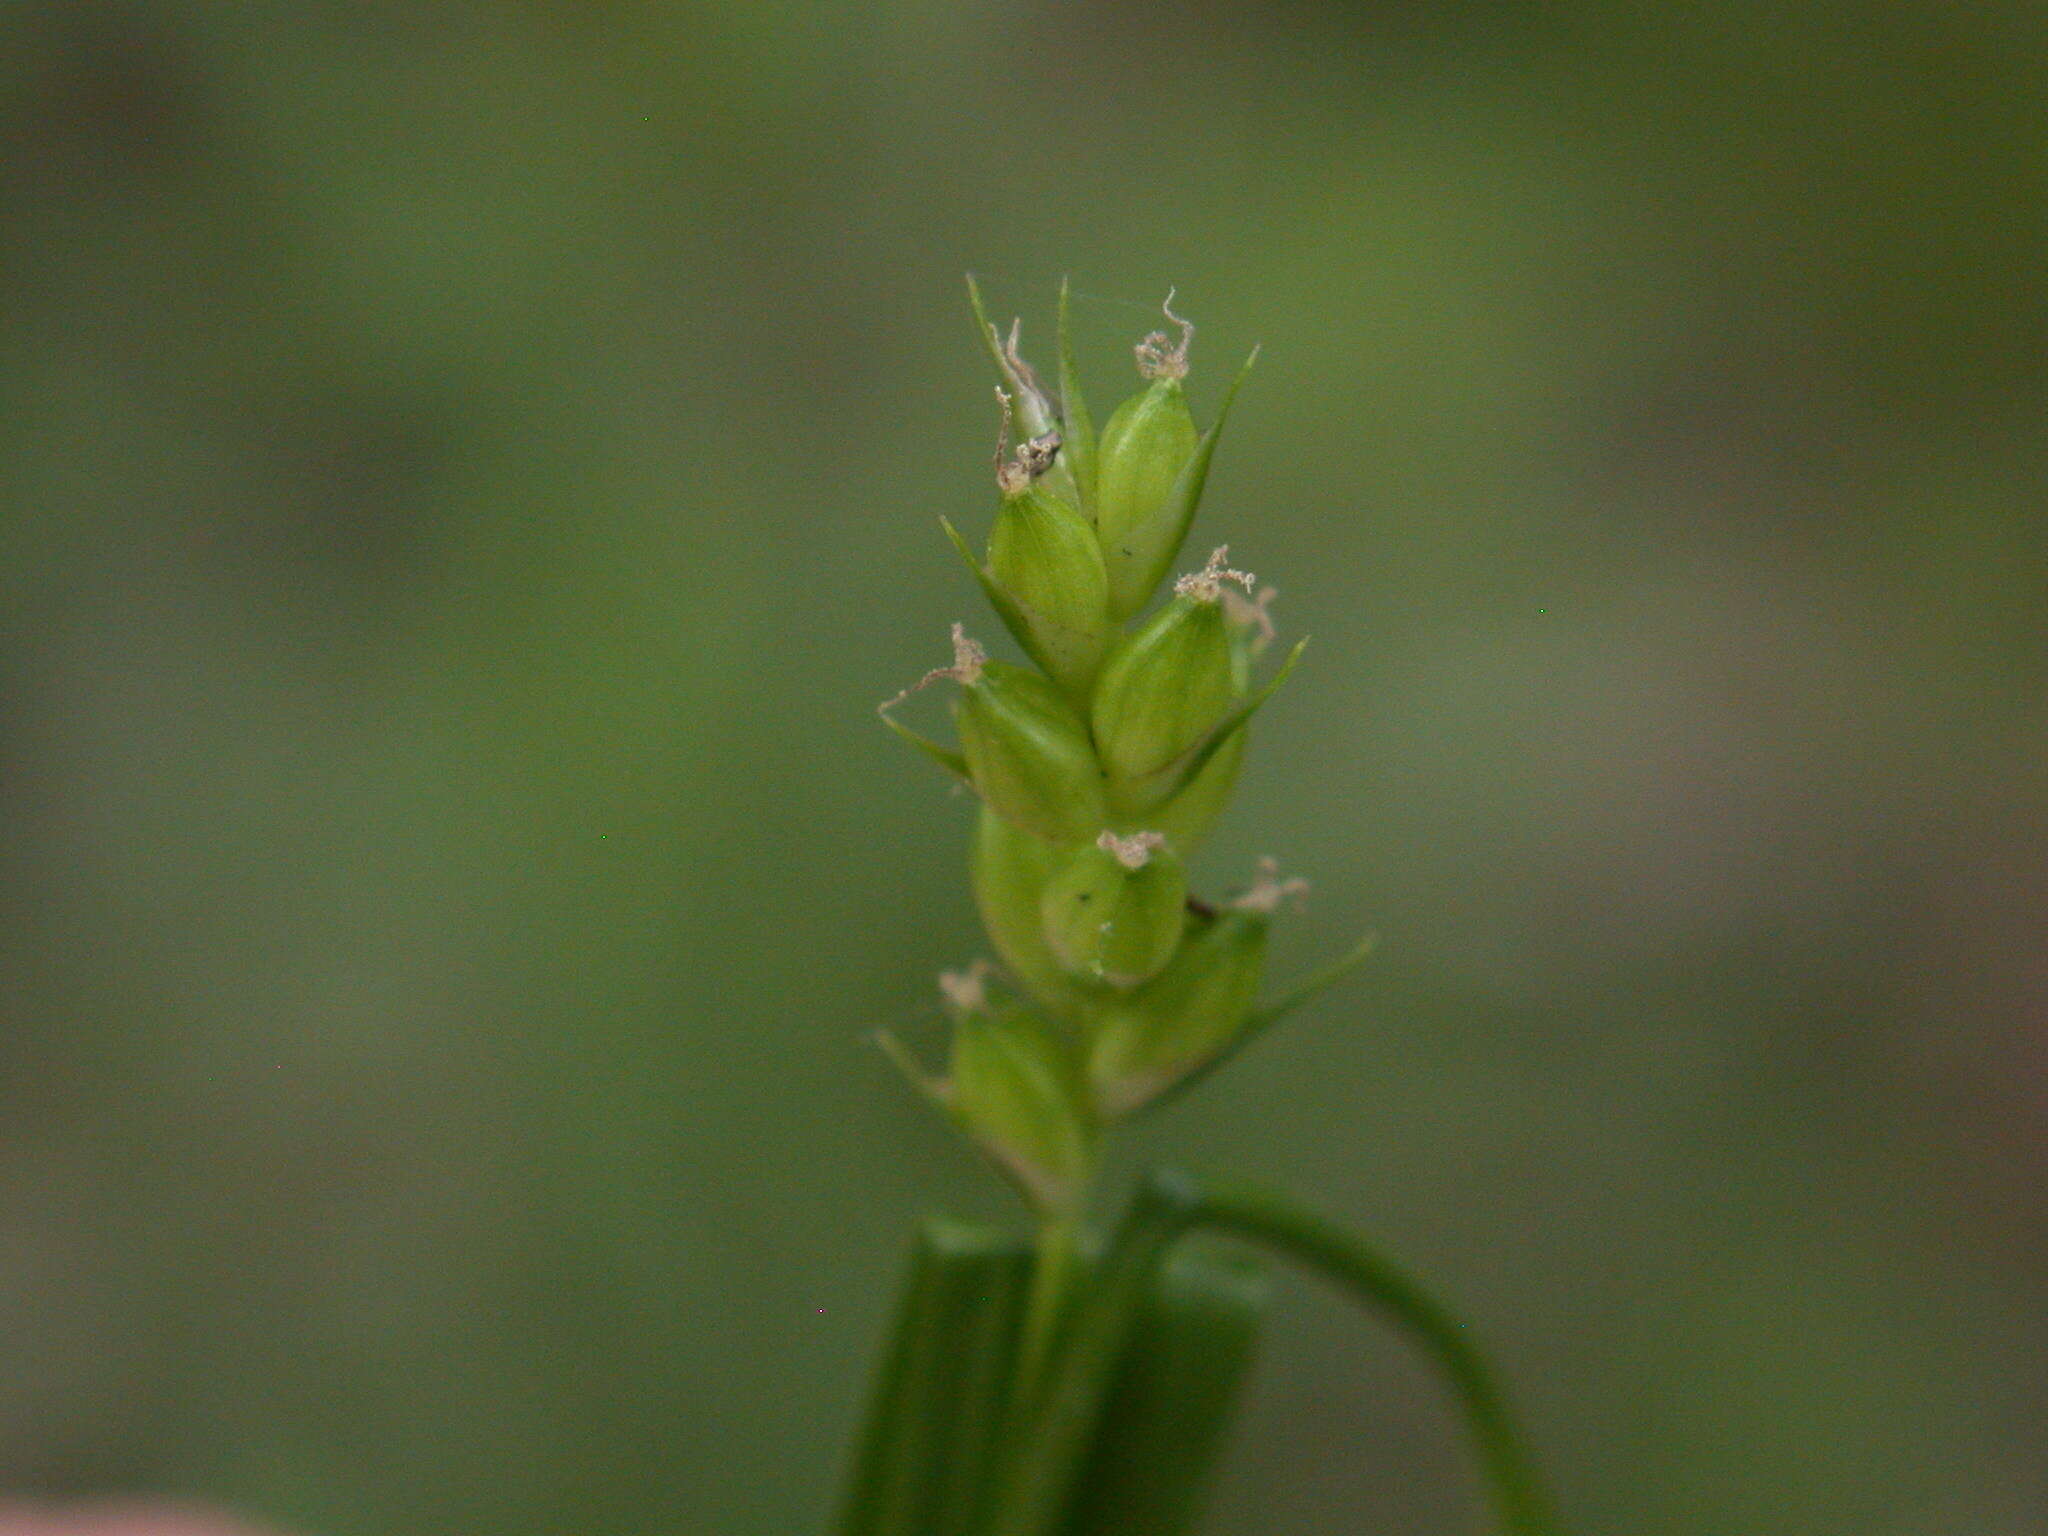 Imagem de Carex amphibola Steud.